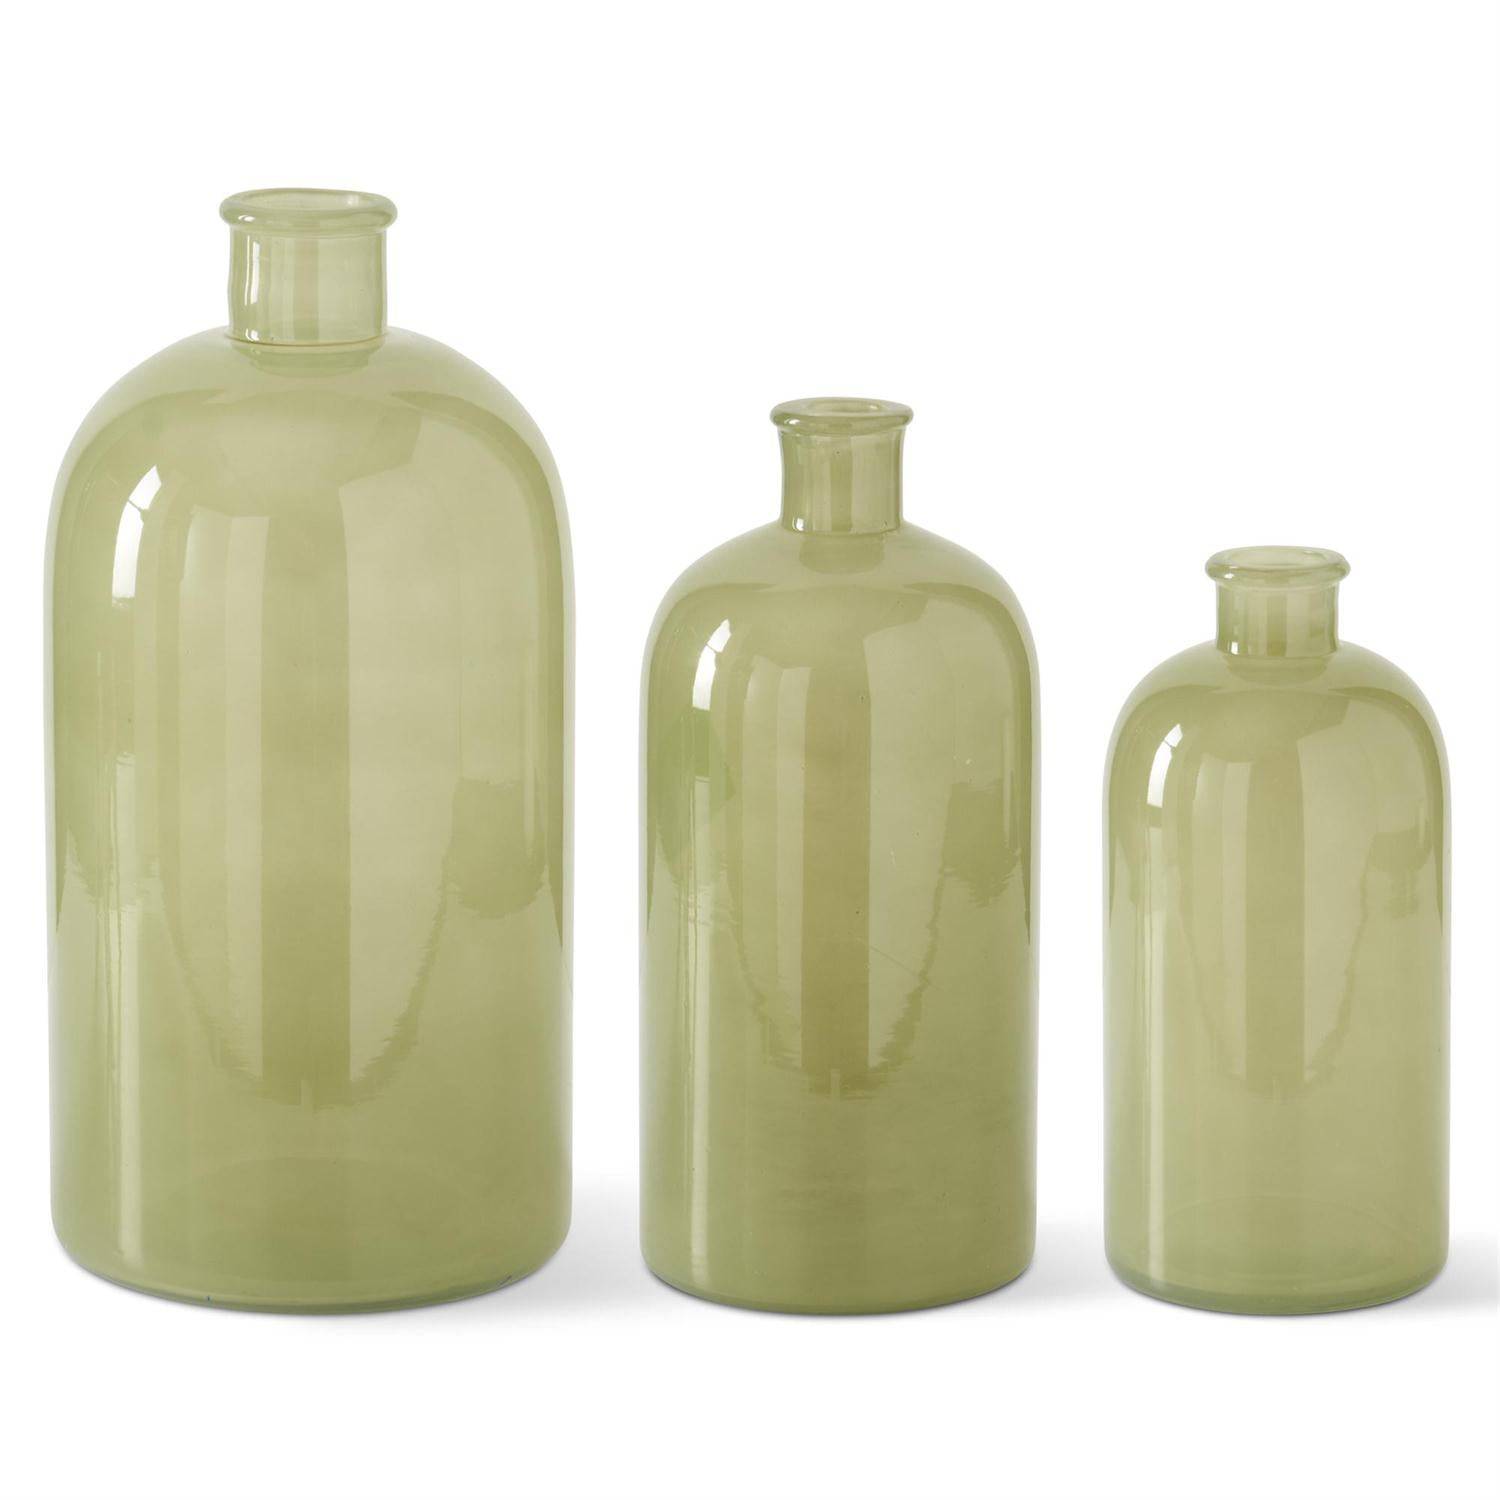 Green Glass Bottle Vases - The Preppy Bunny